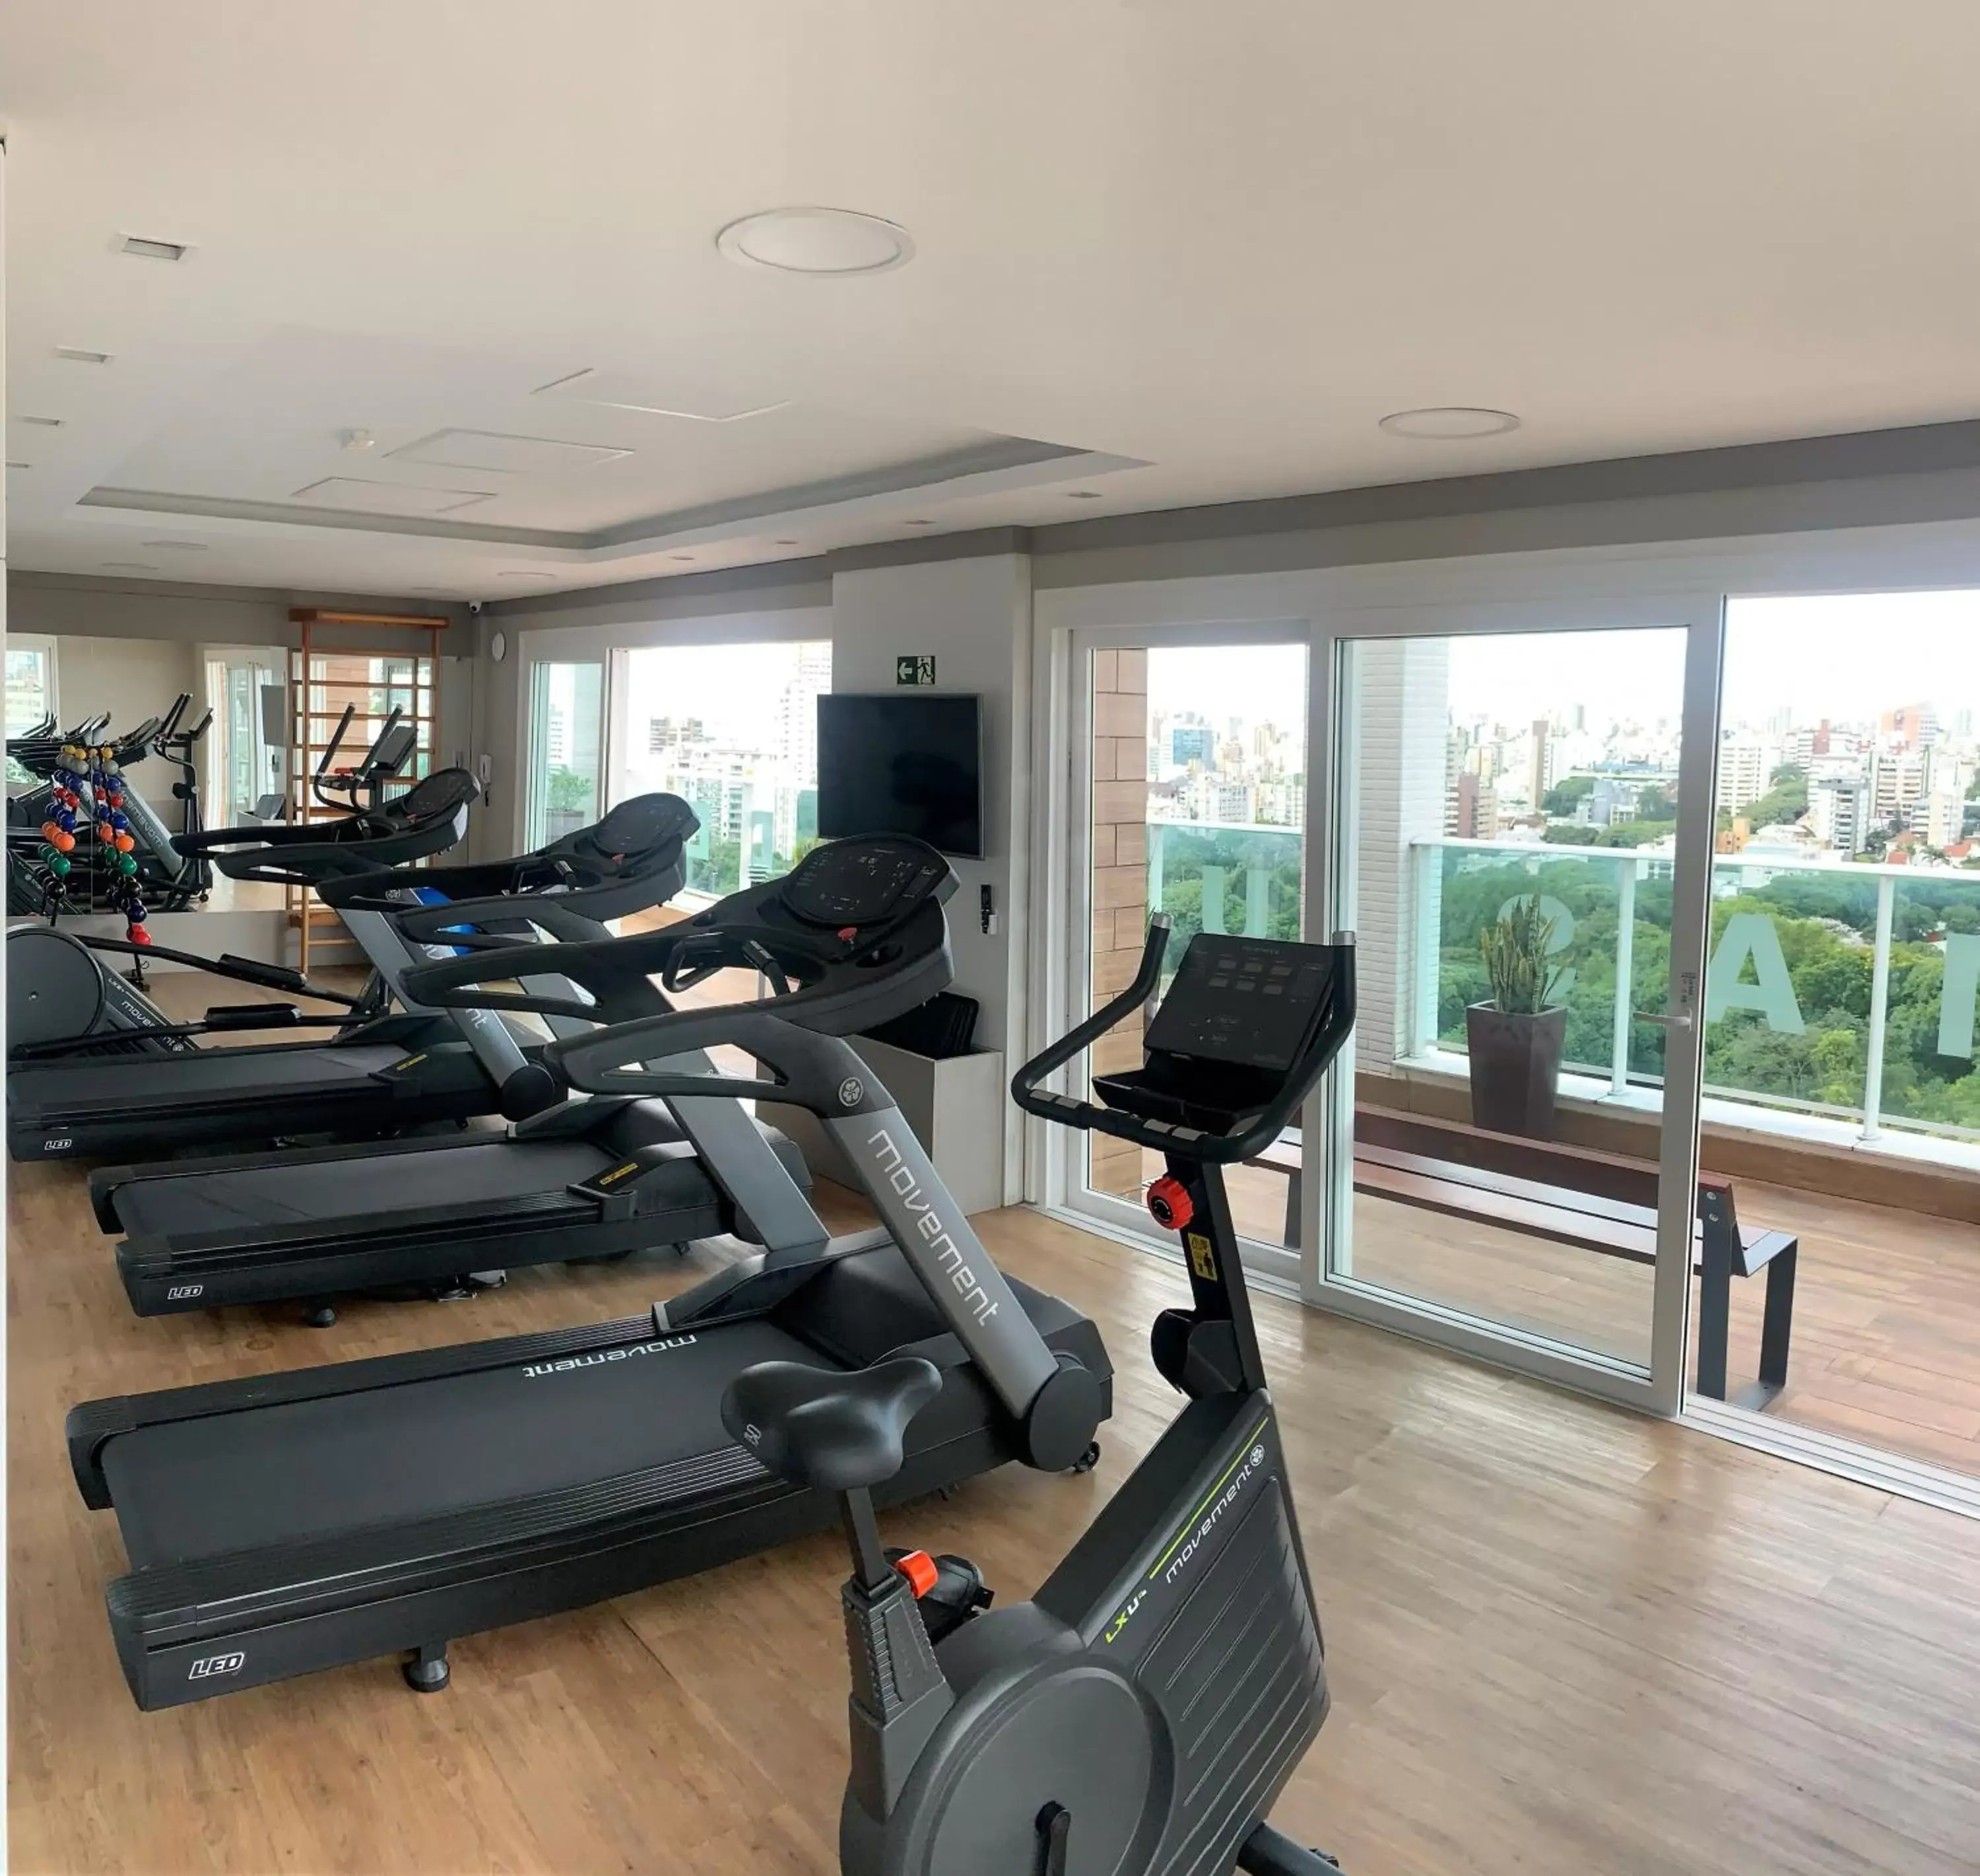 Fitness centre/facilities, Fitness Center/Facilities in Quality Porto Alegre